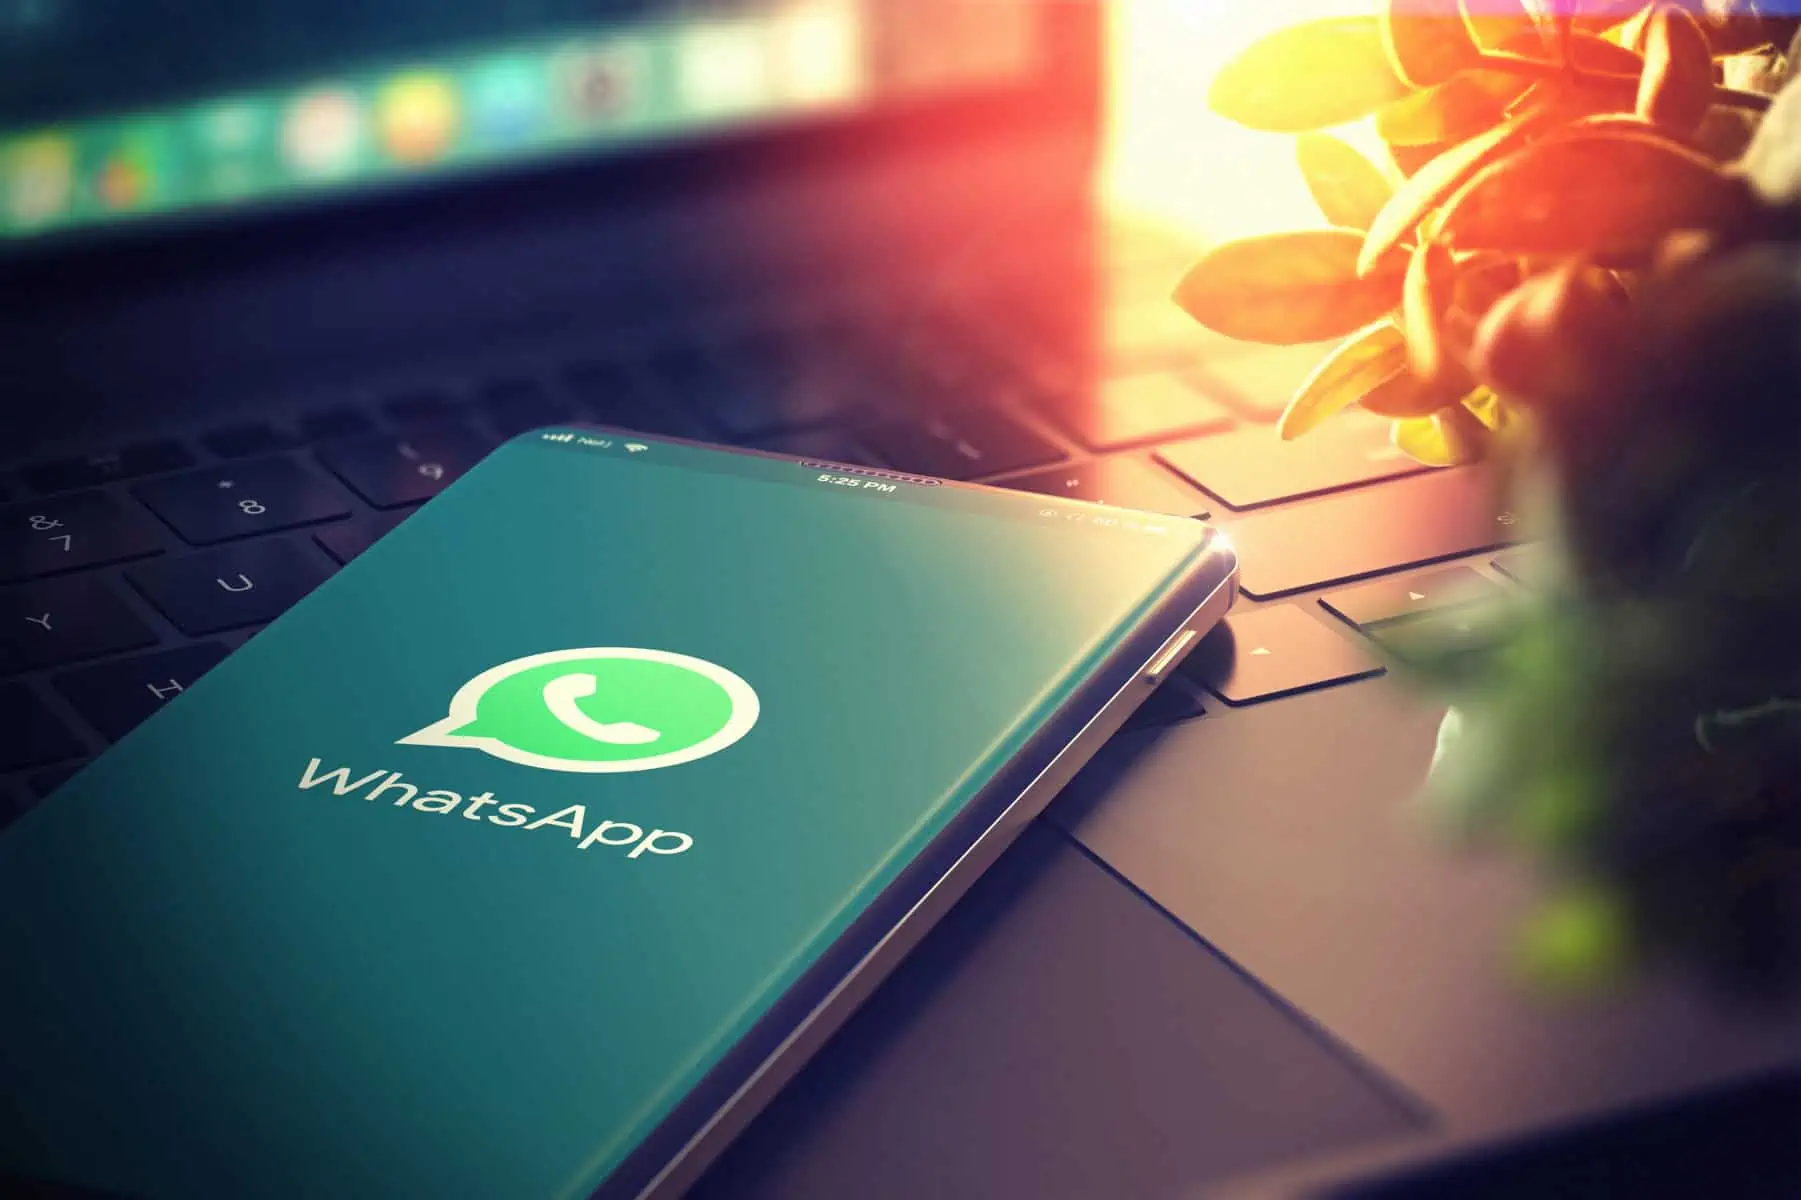 WhatsApp atualizações, WhatsApp partilhar ficheiros, não fazer no WhatsApp, mensagem falsa no WhatsApp, WhatsApp cópias de segurança grátis, WhatsApp atualizações de estado Web